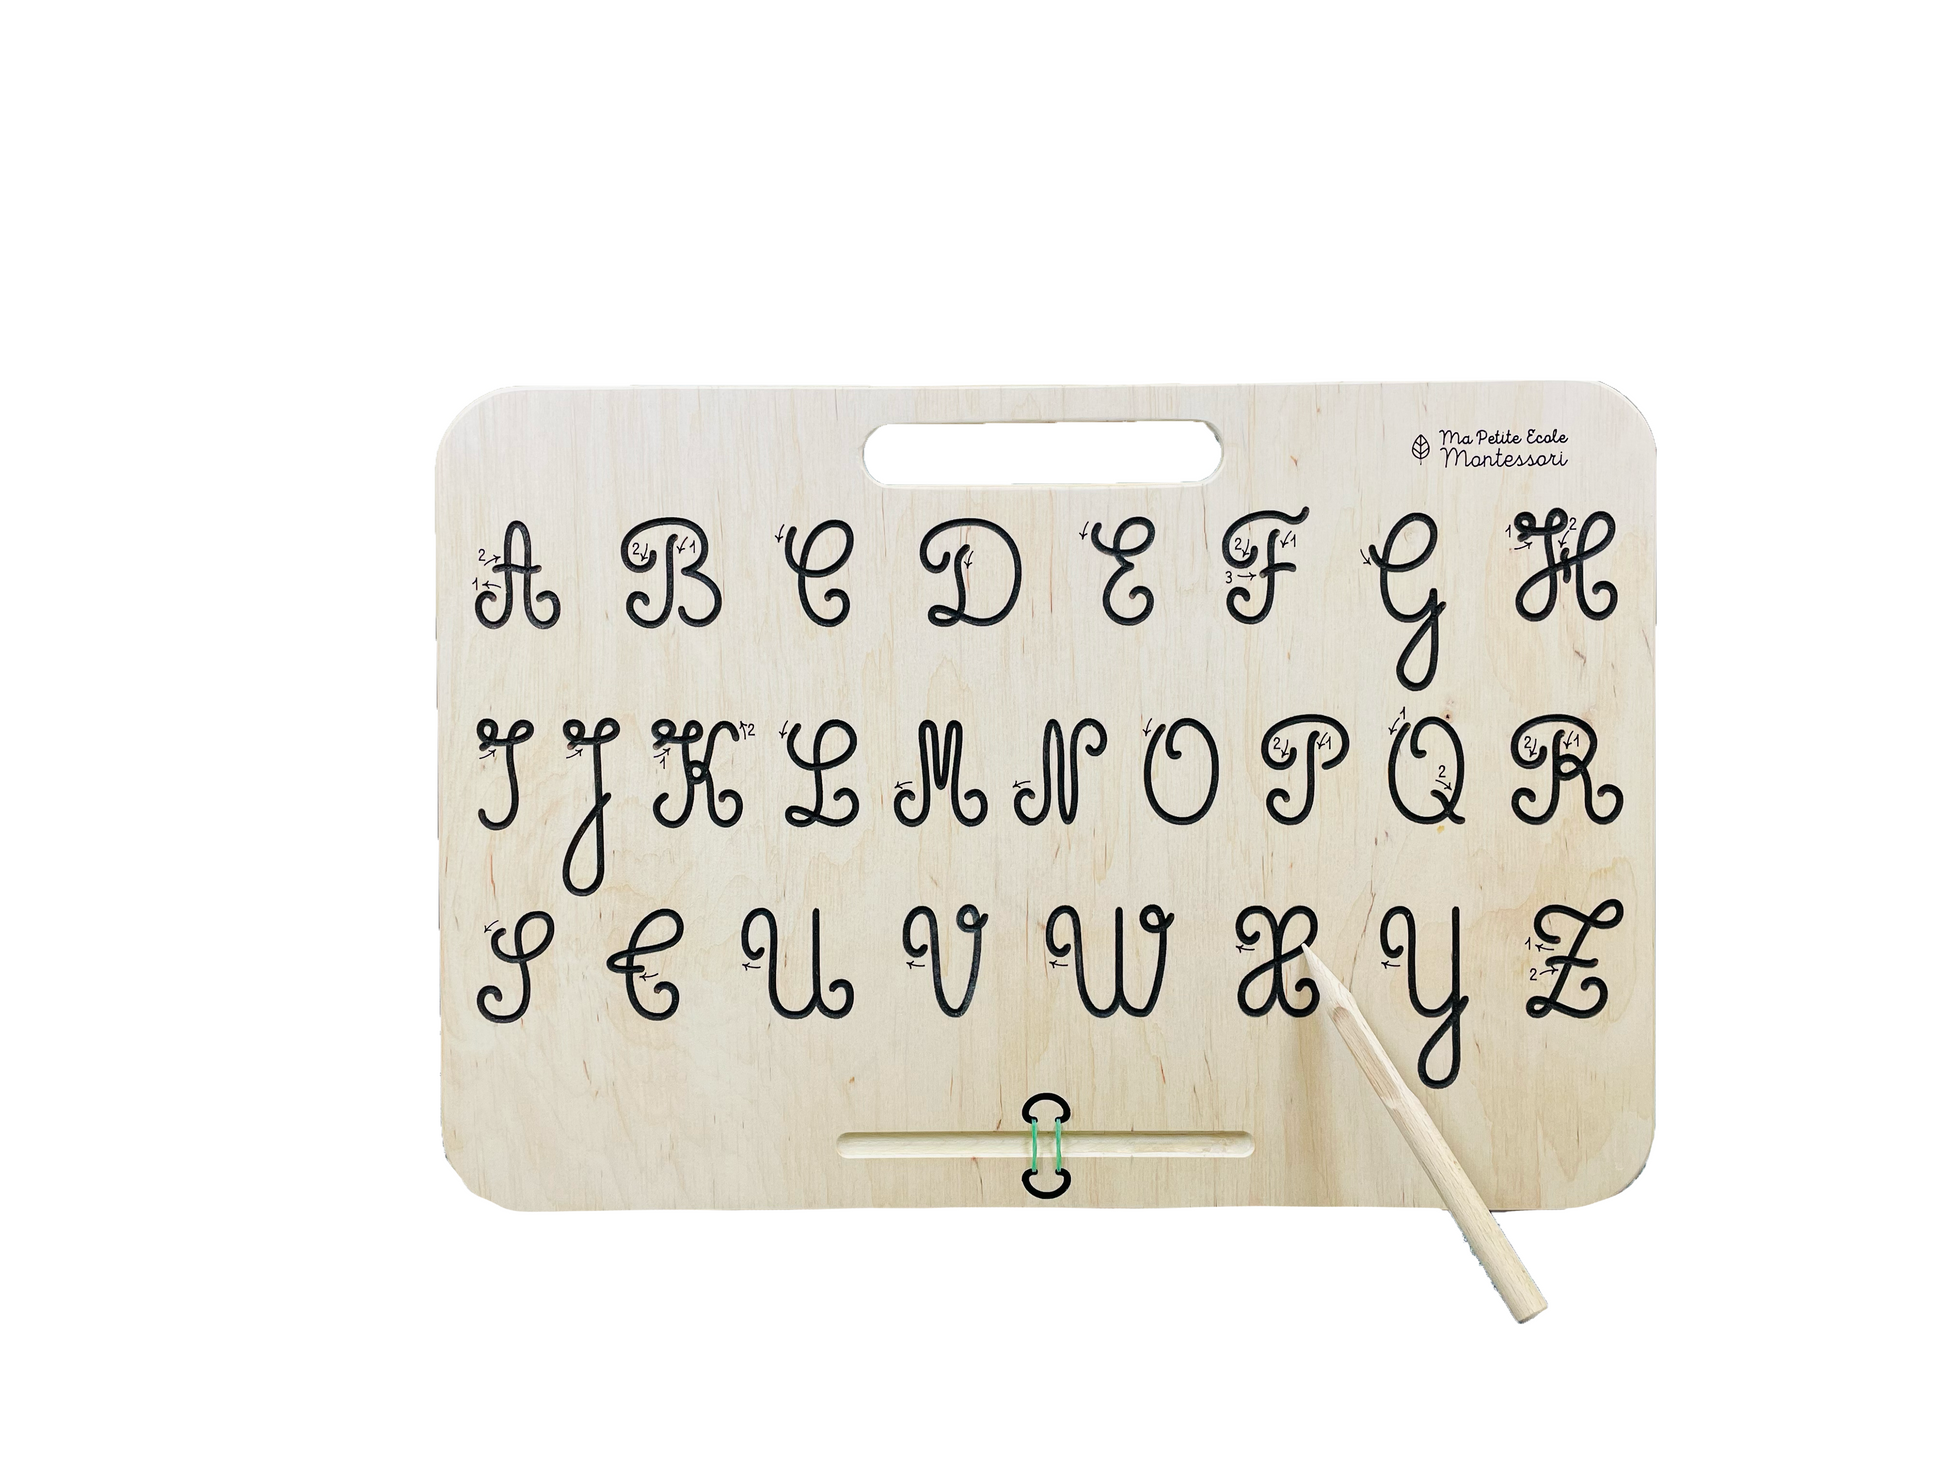 Lettres majuscules cursives